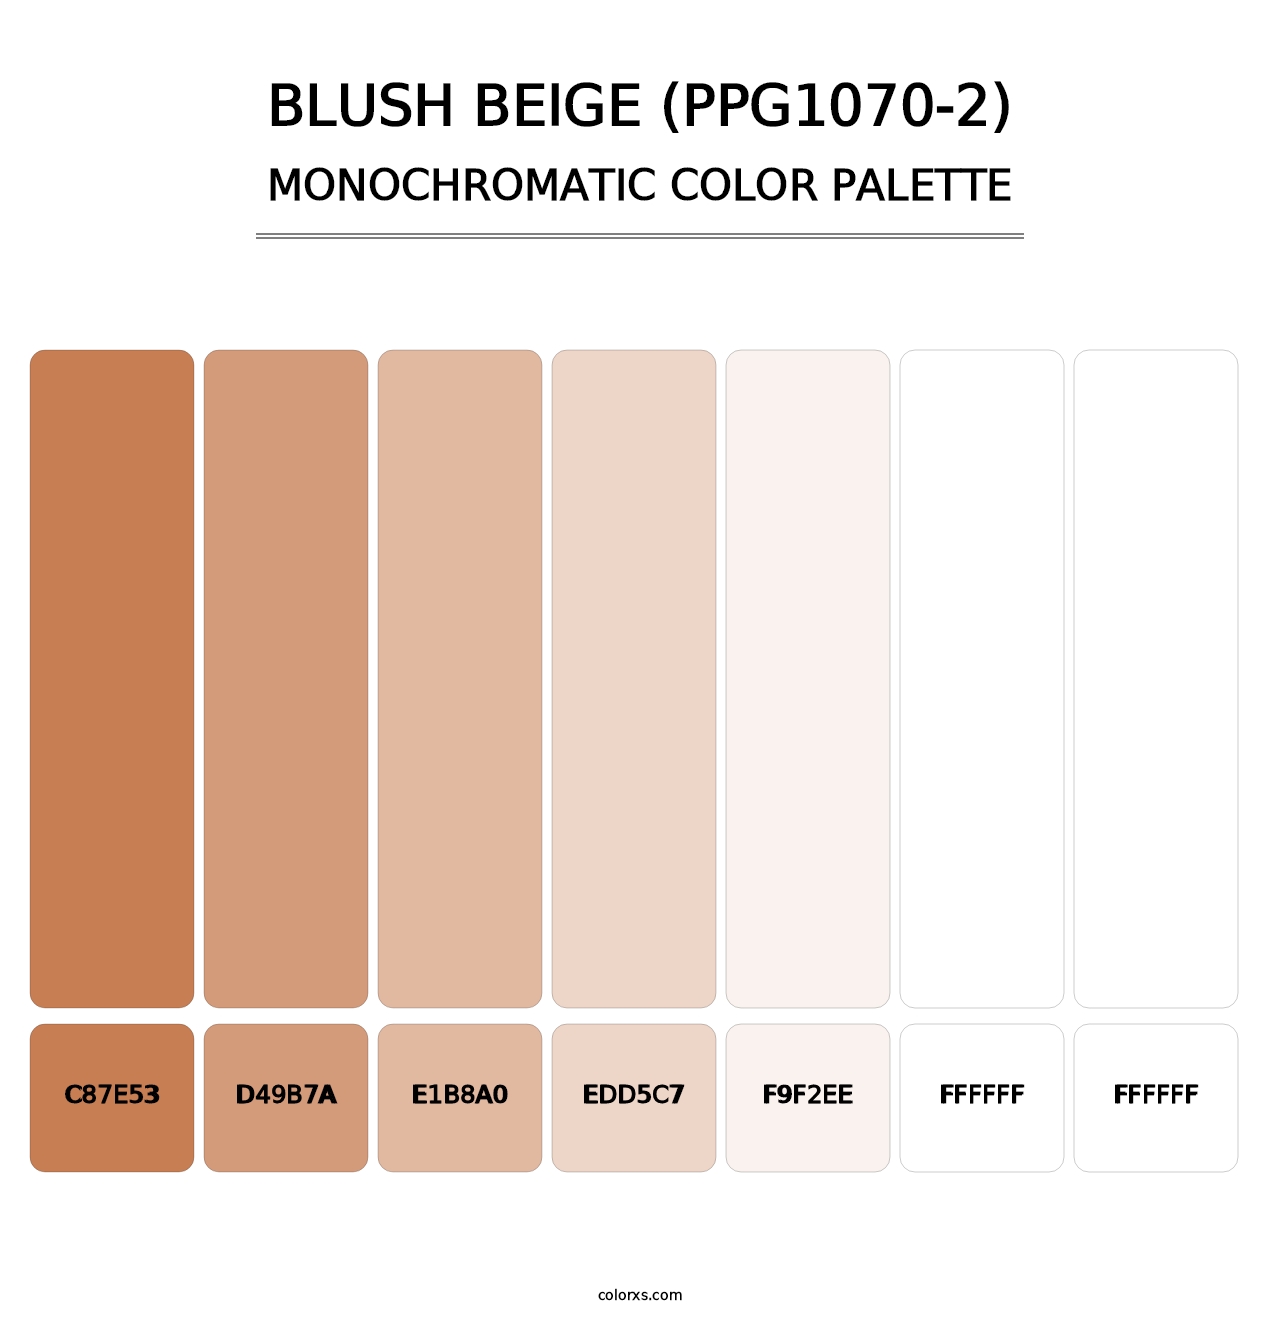 Blush Beige (PPG1070-2) - Monochromatic Color Palette